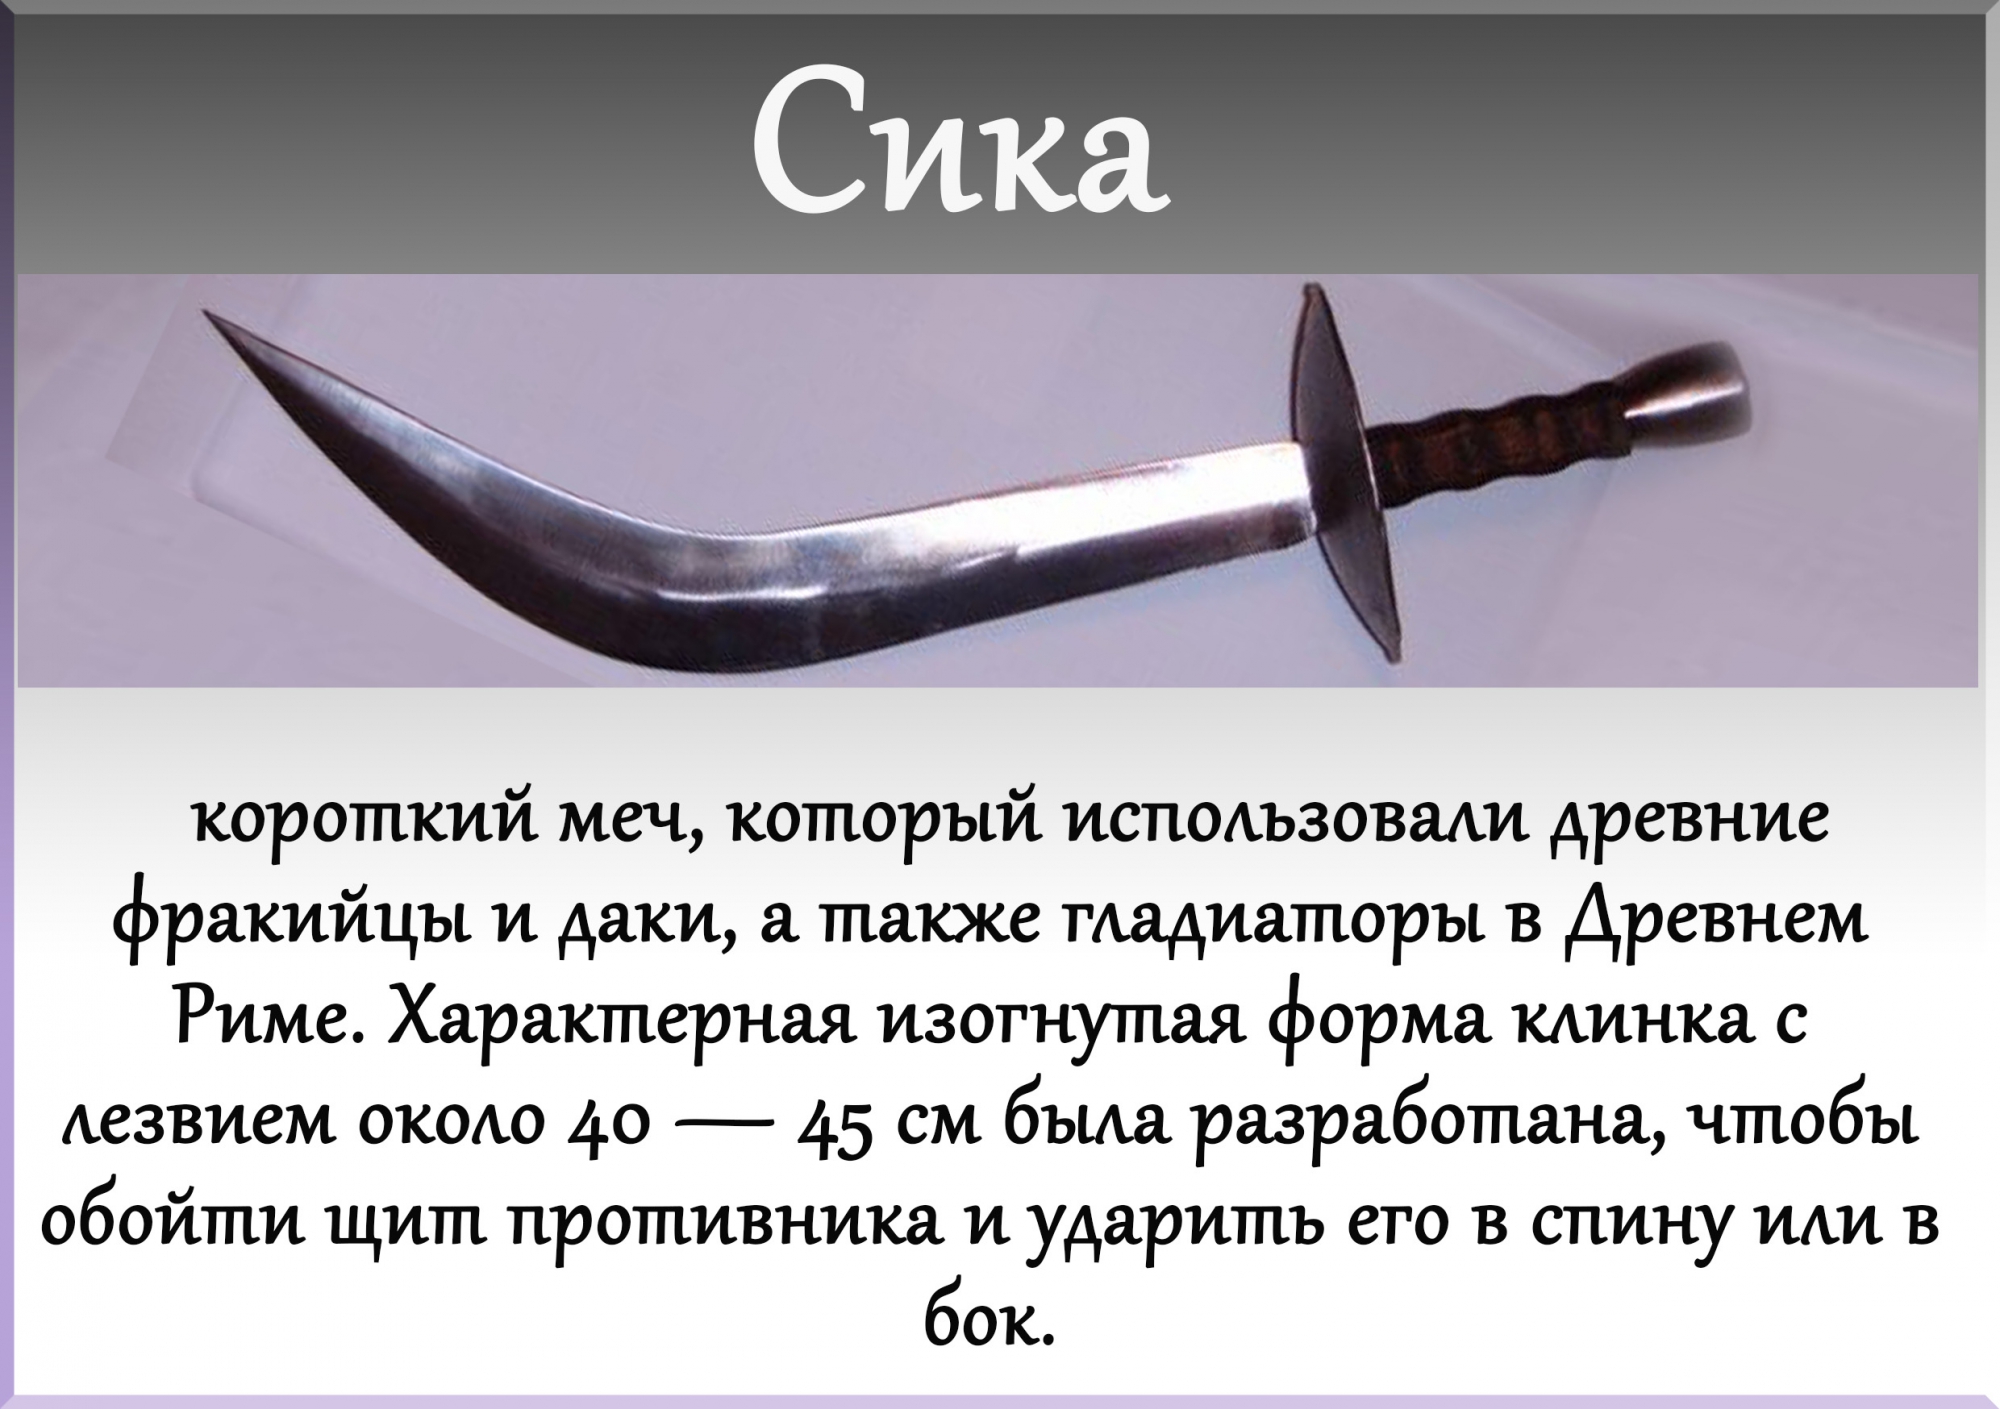 Какой кинжал был украден в рассказе тринадцатый. Фракийский меч Сика. Фракийский кинжал Сика. Типы холодного оружия. Виды хорододного оружия.